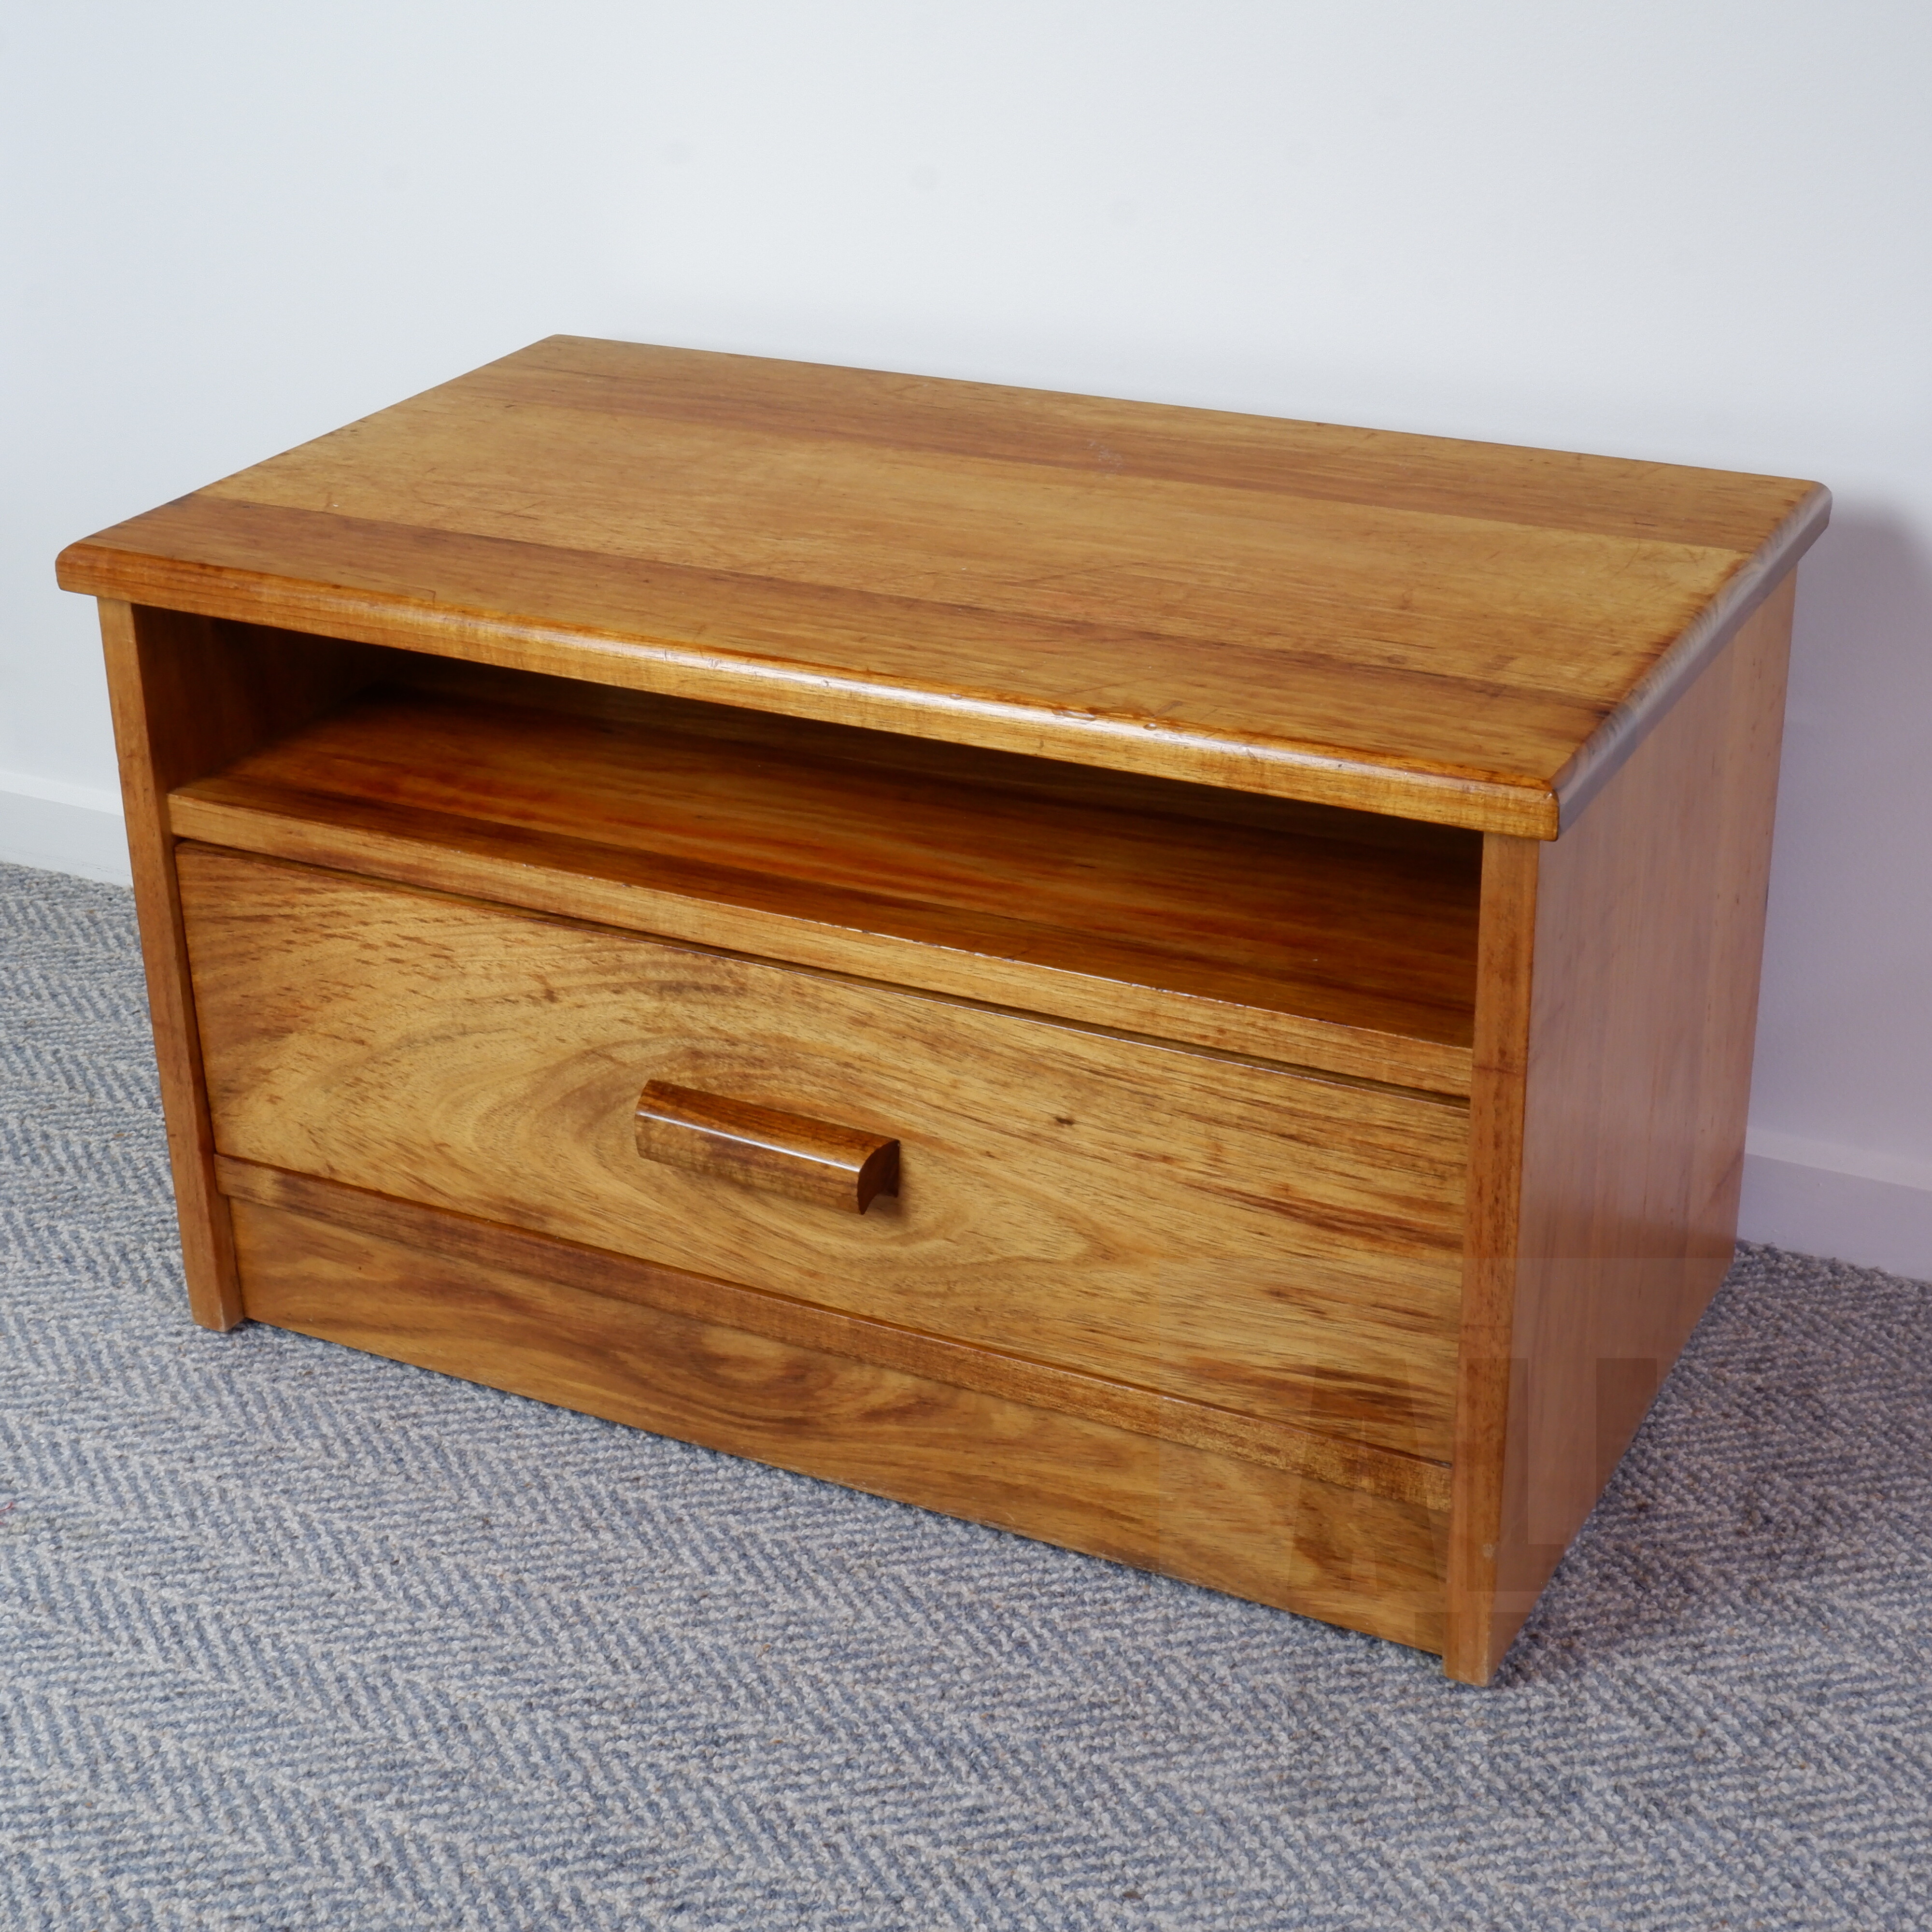 'Bespoke Solid Hardwood Bedside Cabinet'